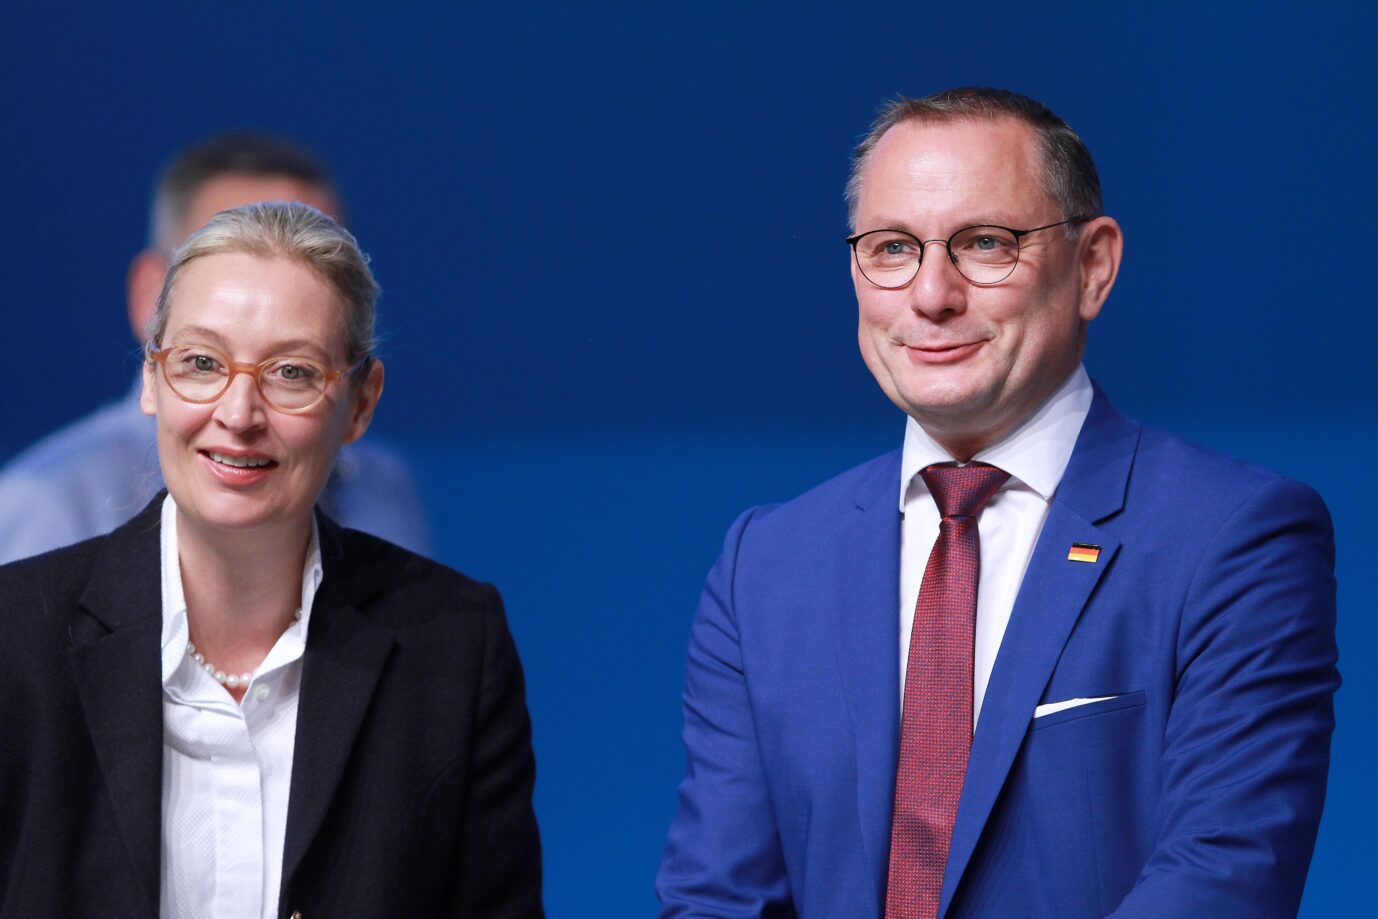 Grugahalle, 15. Bundesparteitag der AfD: Alice Weidel und Tino Chrupalla. Der Deutsche Journalisten-Verband will die Partei künftig ignorieren.